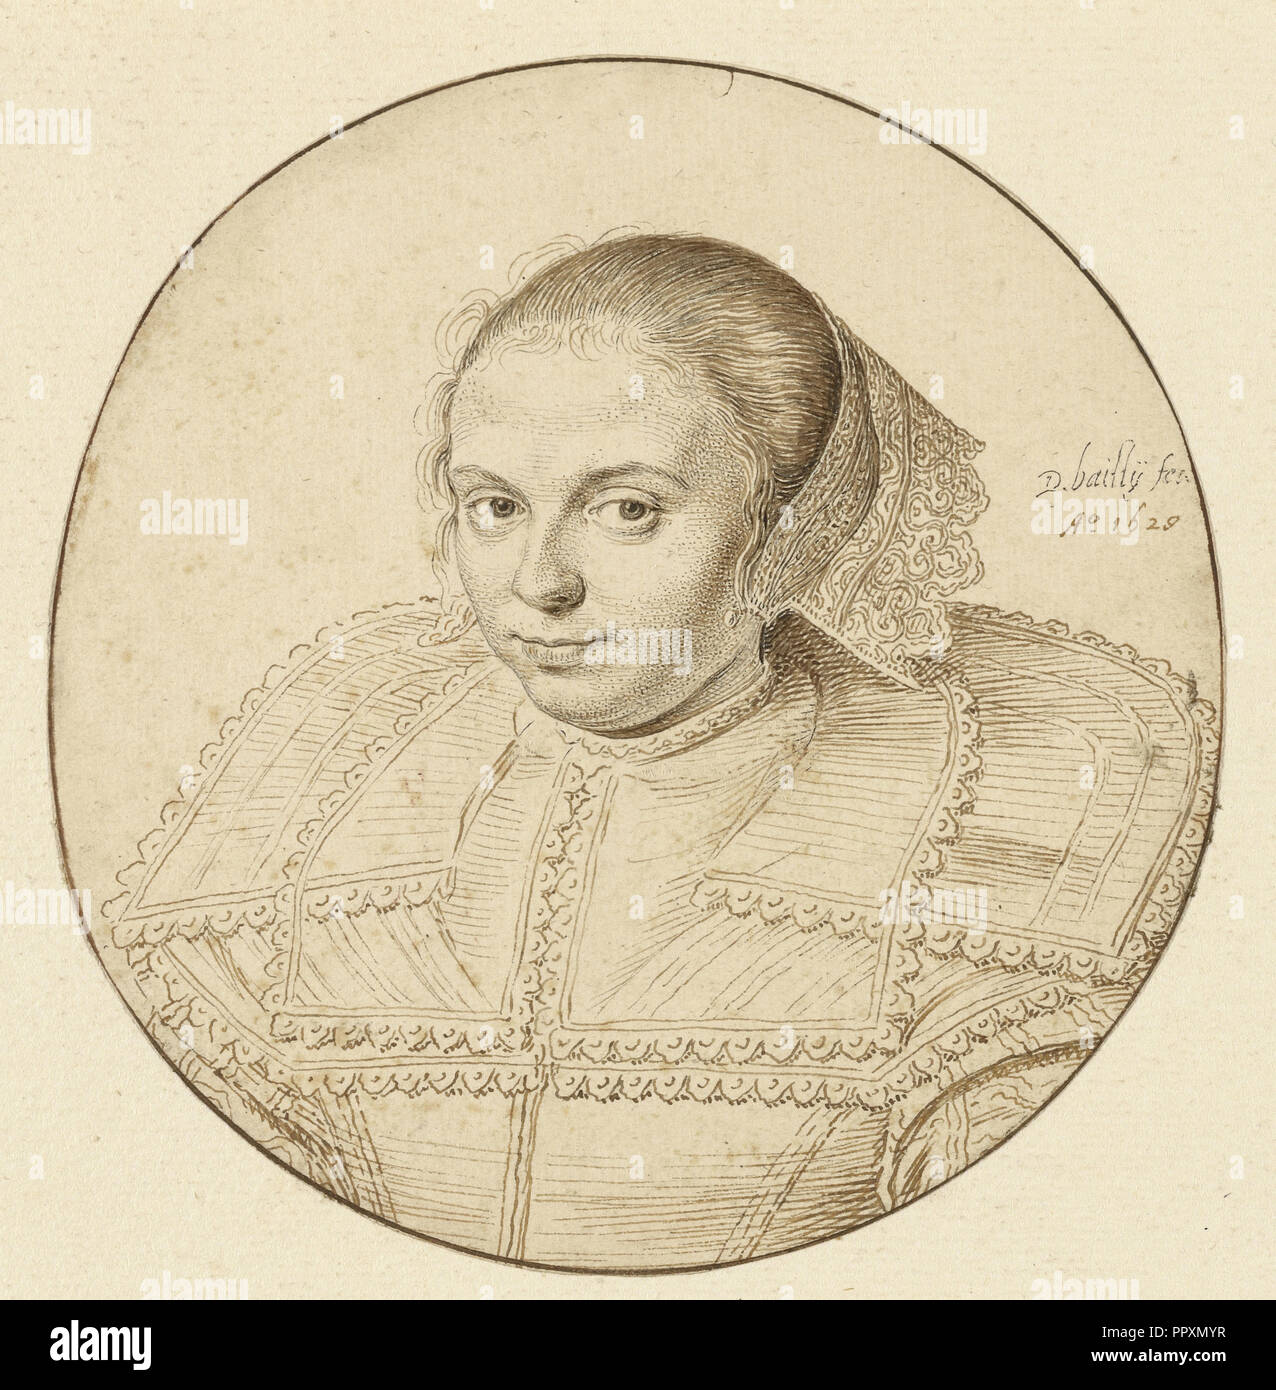 Ritratto di una donna; David Bailly, Olandese, 1584 - 1657, Paesi Bassi; 1629; Penna e marrone chiaro e scuro inchiostro; framing in linea Foto Stock